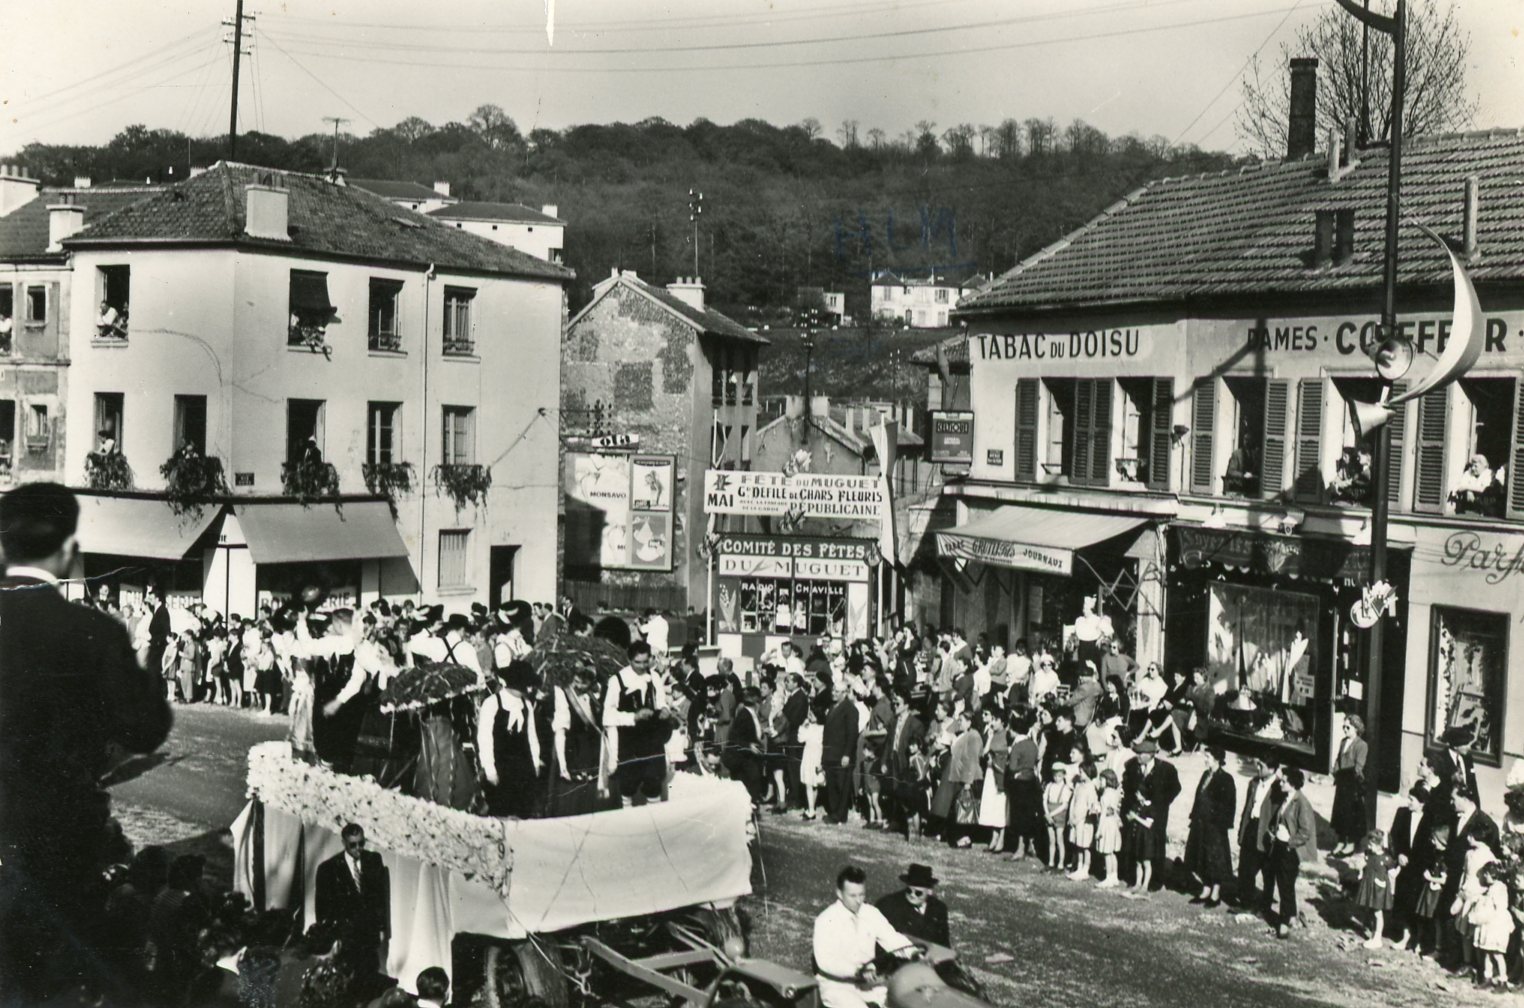 Carte postale (sans date) du défilé de chars pour les Fêtes du Muguet sur l’avenue Roger Salengro, au niveau du quartier du Doisu.